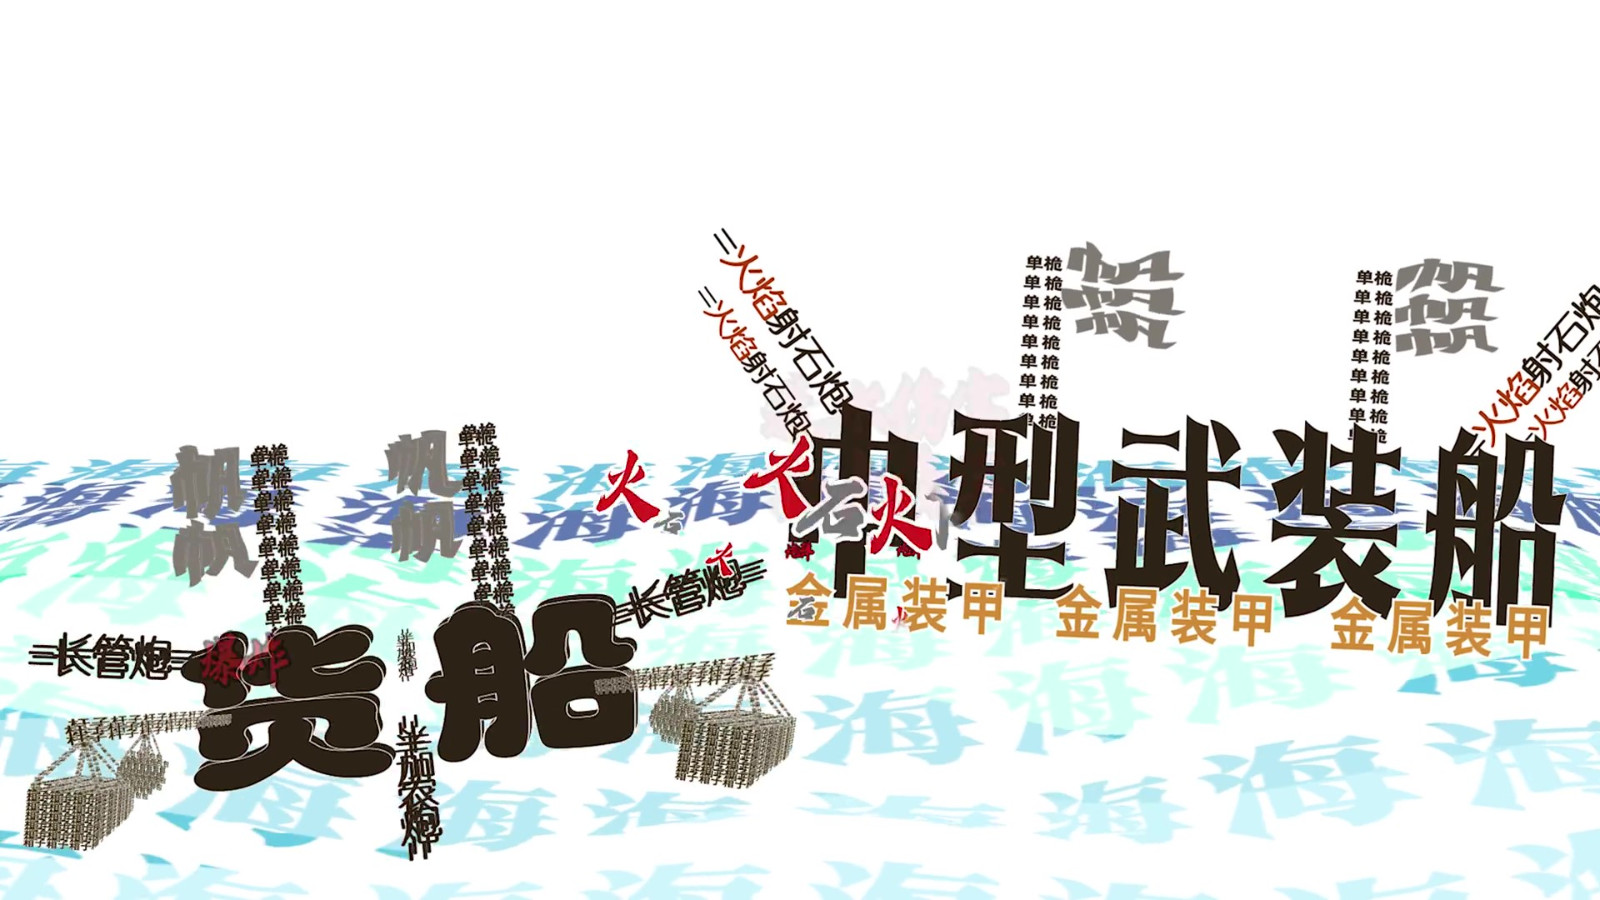 《碧海黑帆》极简中文特供版预告公布 11月8日发售 二次世界 第5张